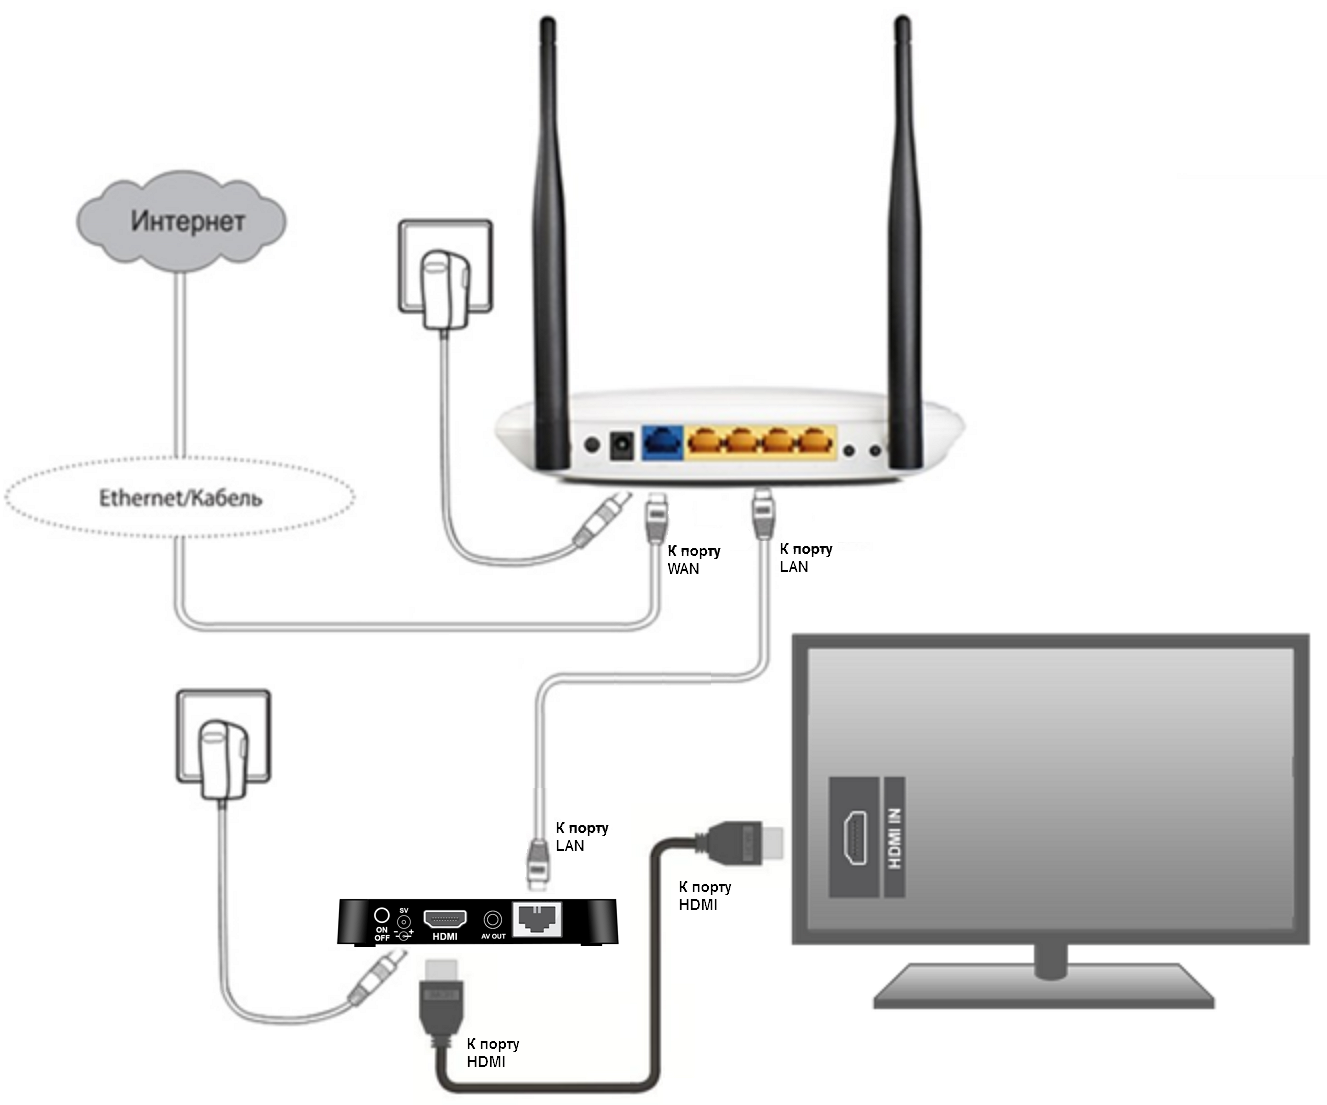 Можно ли подключить роутер к телевизору: напрямую по проводу или через wi-fi